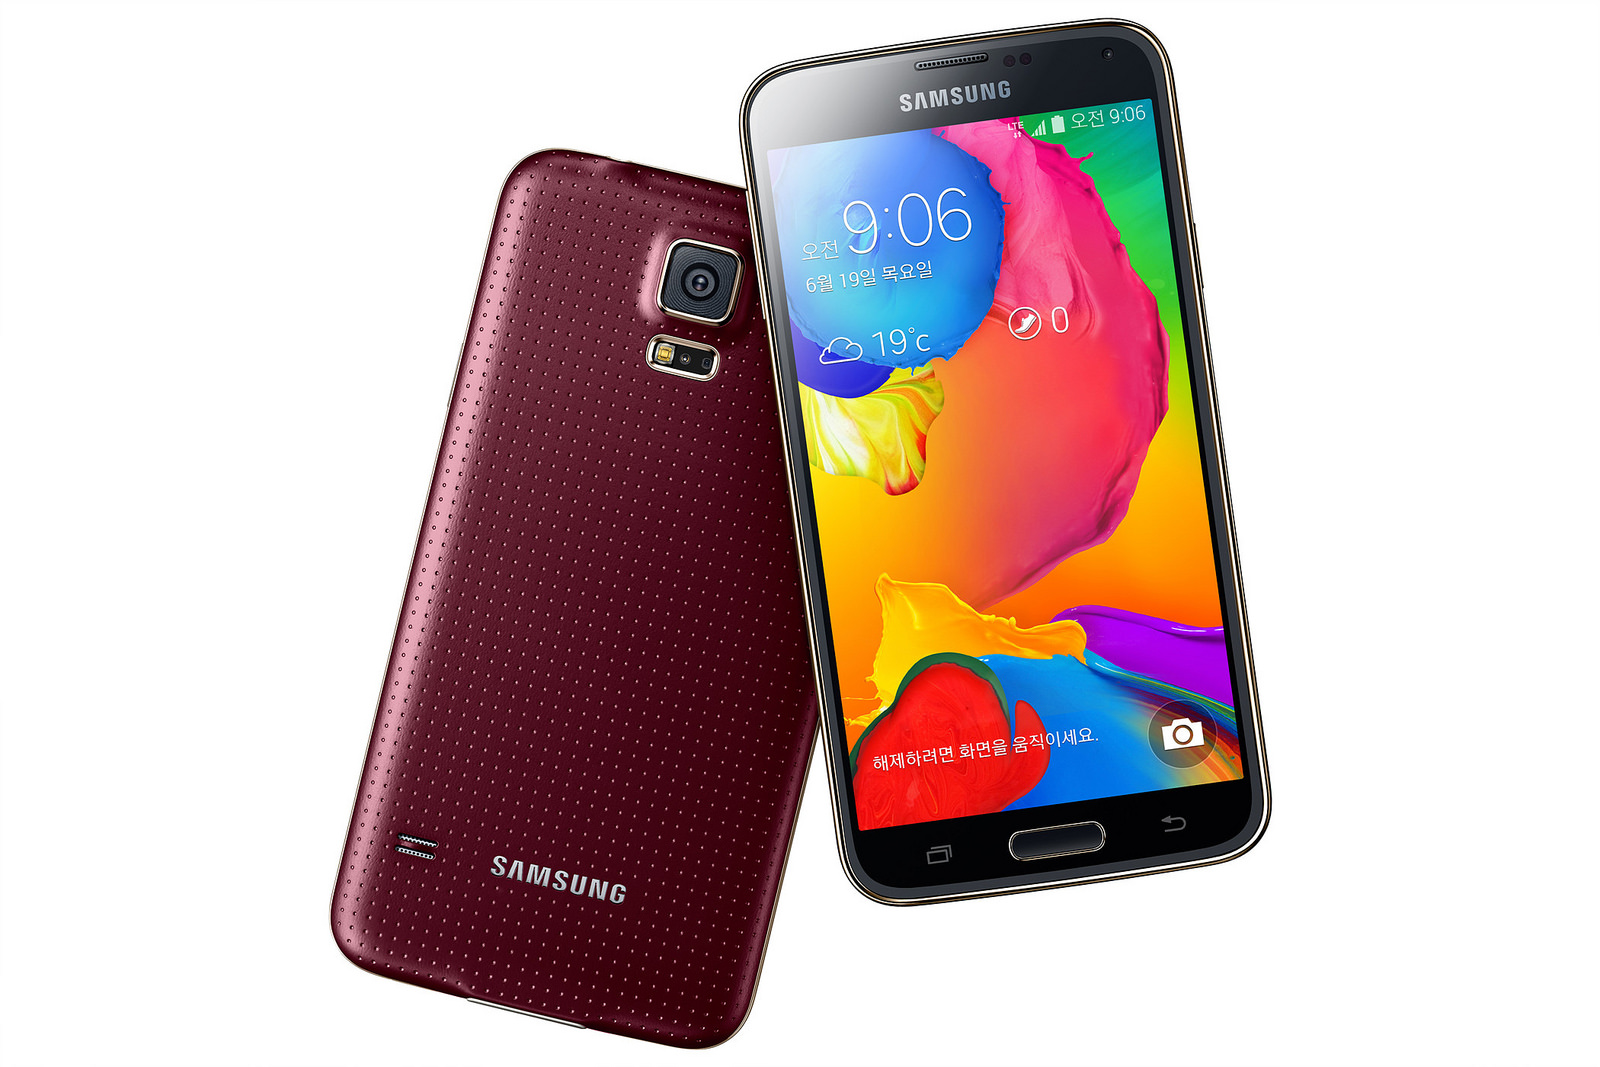 Na surdina: Samsung anuncia nova e mais potente versão do Galaxy S5